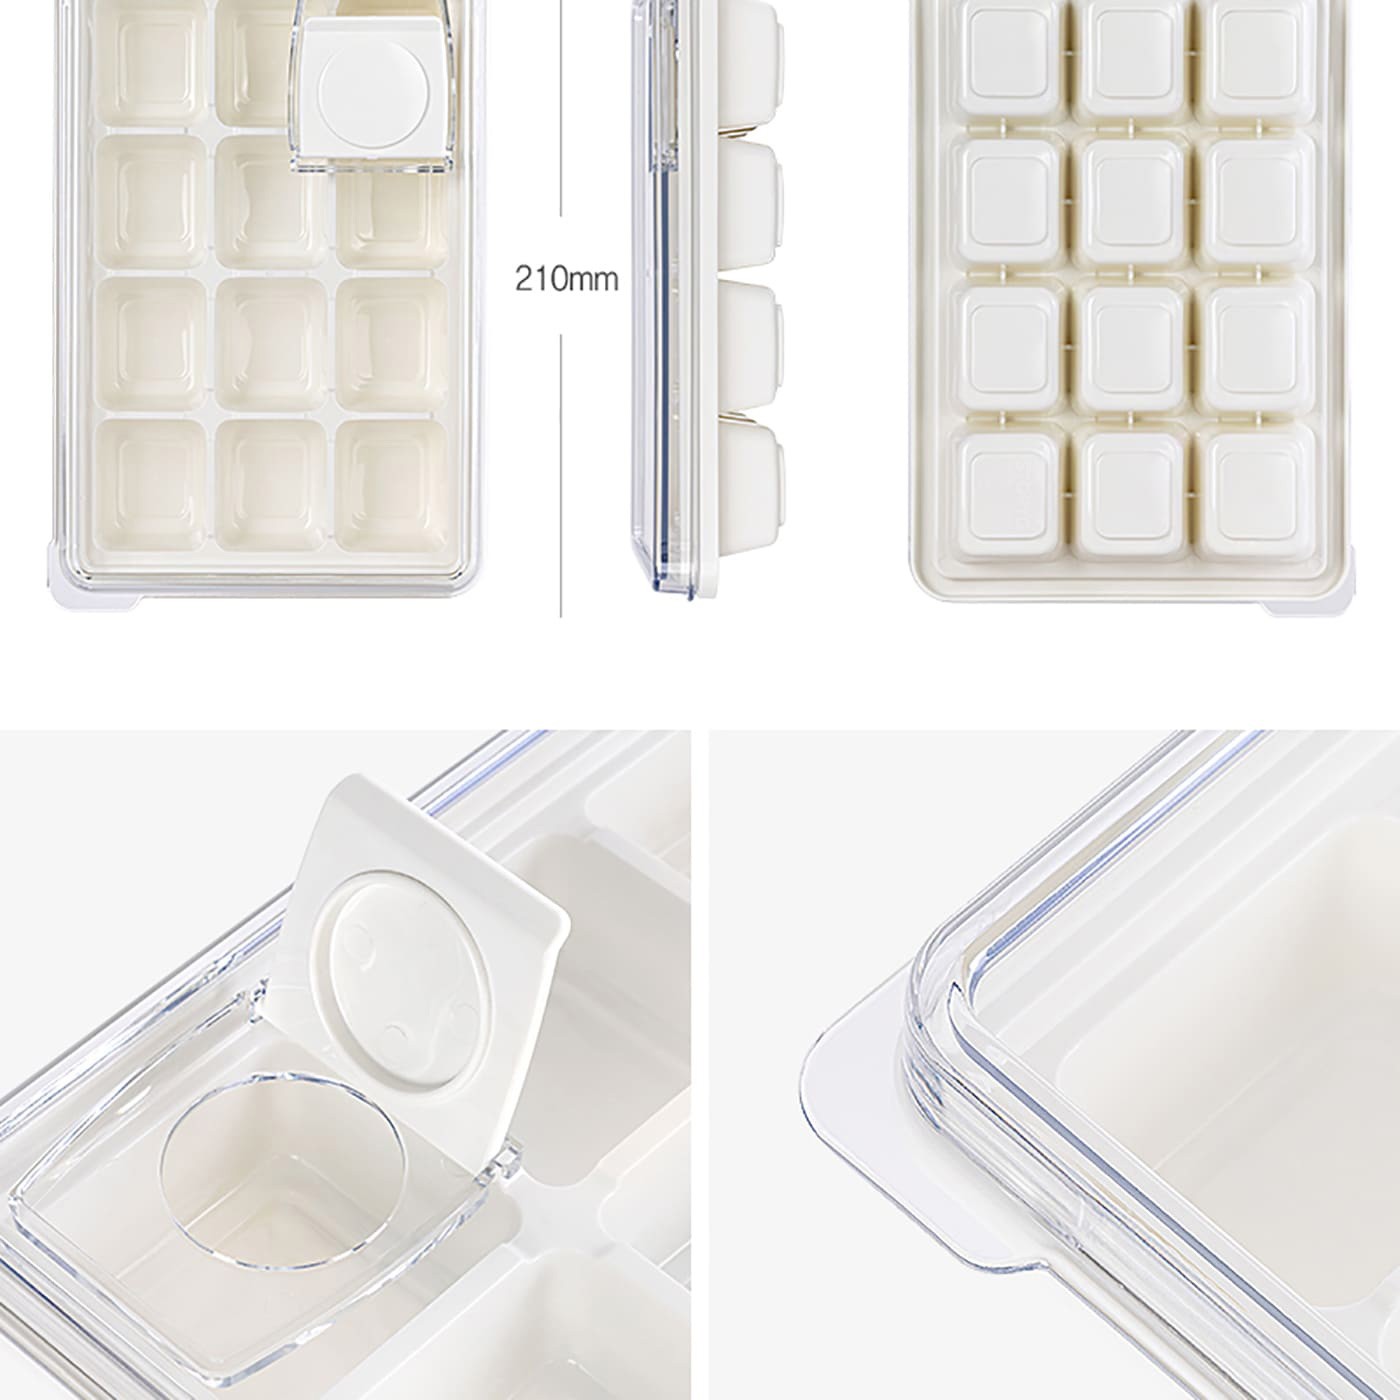 KANKAN 注水式製冰盒2件組6格+12格，可疊放設計，蓋上上蓋防止異味，以柔軟的LDPE材質製成，從底部輕壓即可取出冰塊或食材，食材分裝好輕鬆，需要時不必再另外花時間準備。